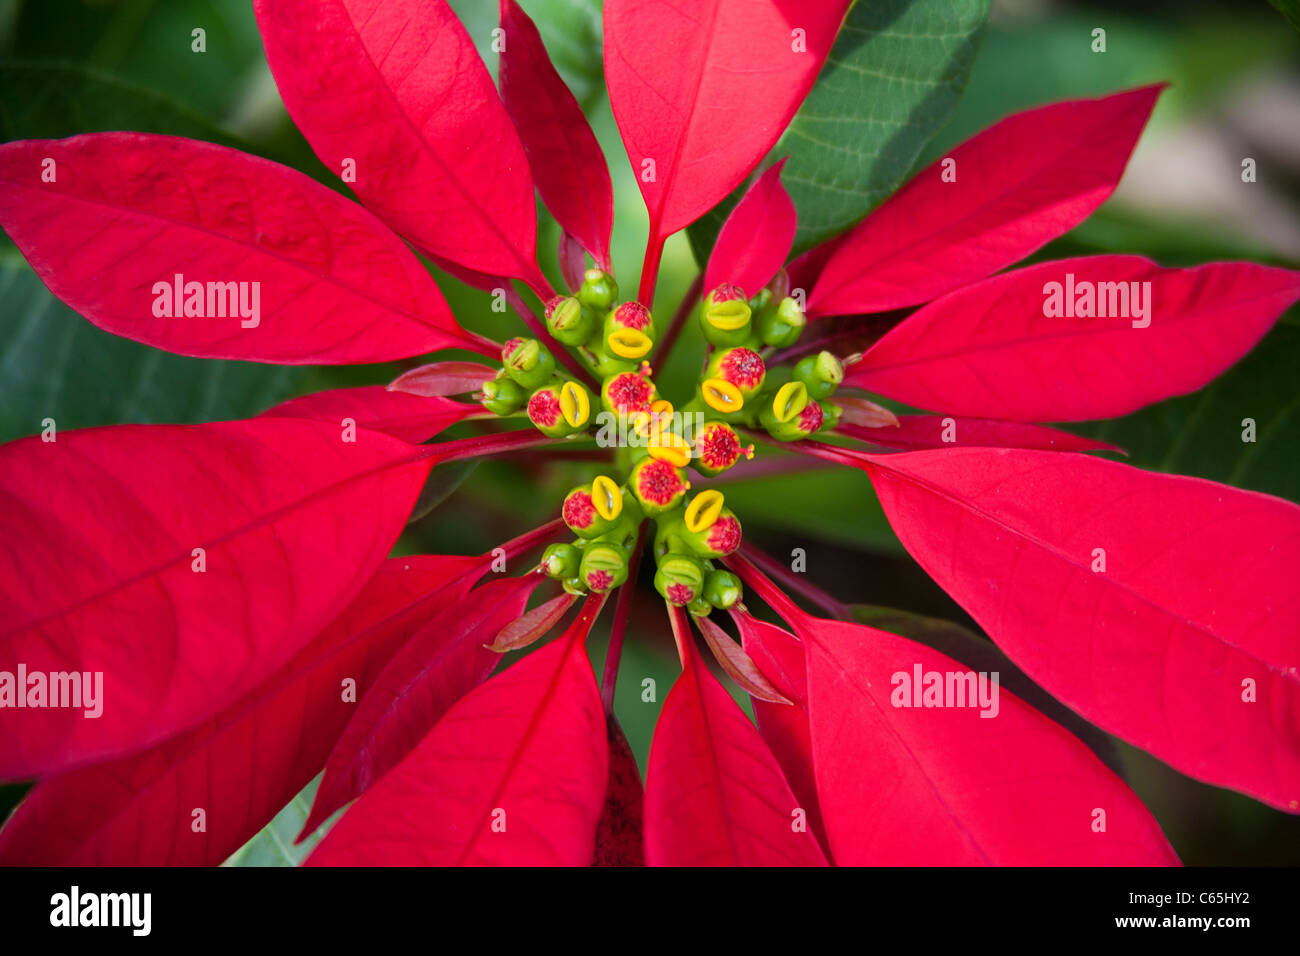 Bluetenstand eines Weihnachtssterns, Roter Weihnachtsstern, Euphorbia pulcherrima, Wild growing Red Euphorbia Stock Photo